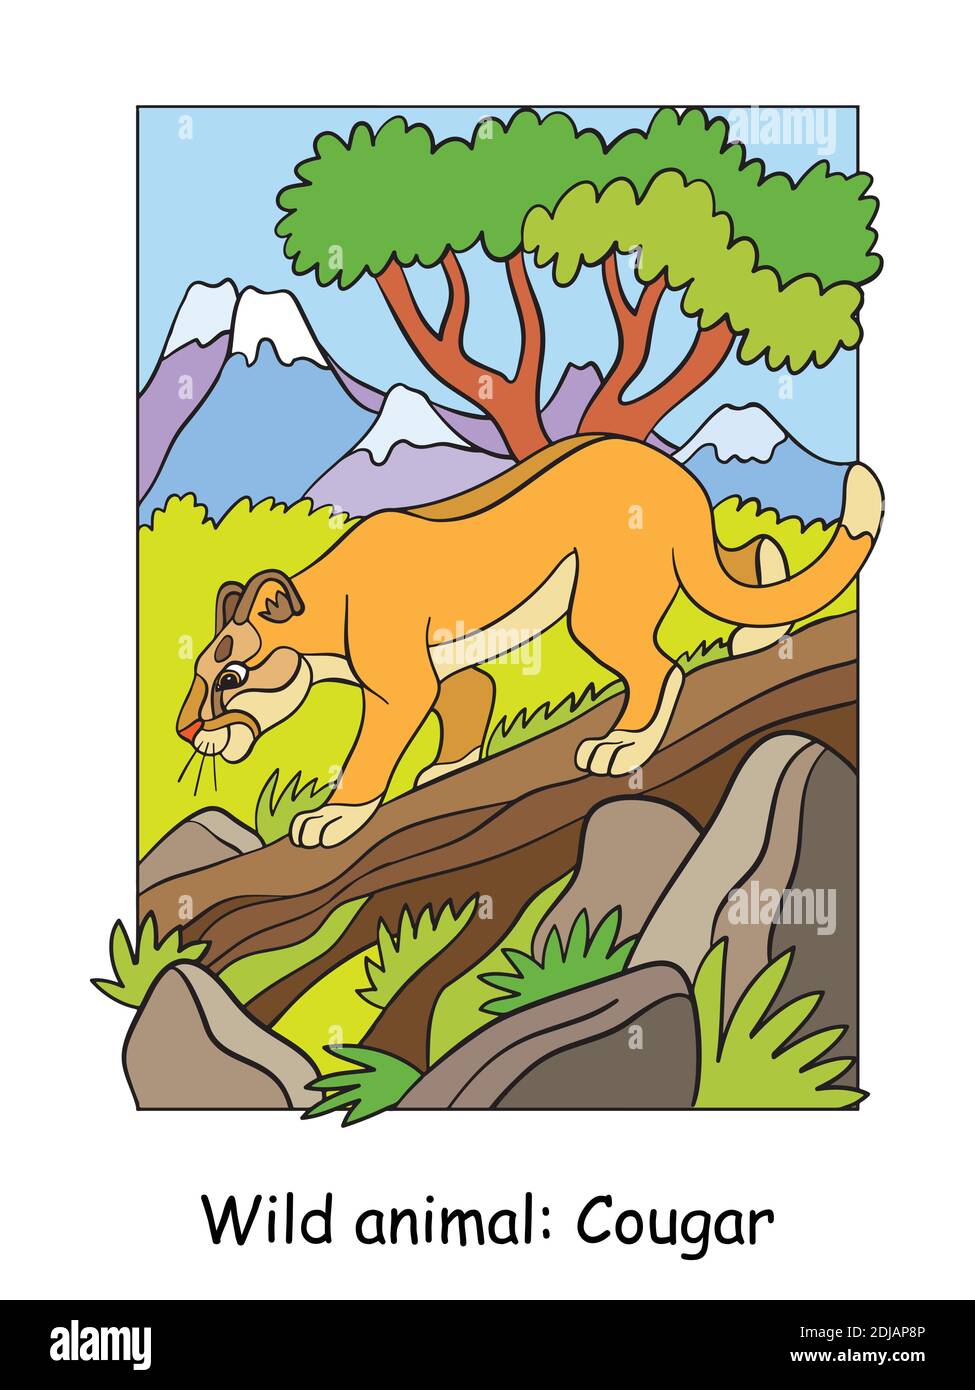 Vektor bunte Illustration mit niedlichen Puma zu Fuß auf einem Baum in Berggebiet. Cartoon-Konturdarstellung. Stock Illustration für Malbuch, Stock Vektor